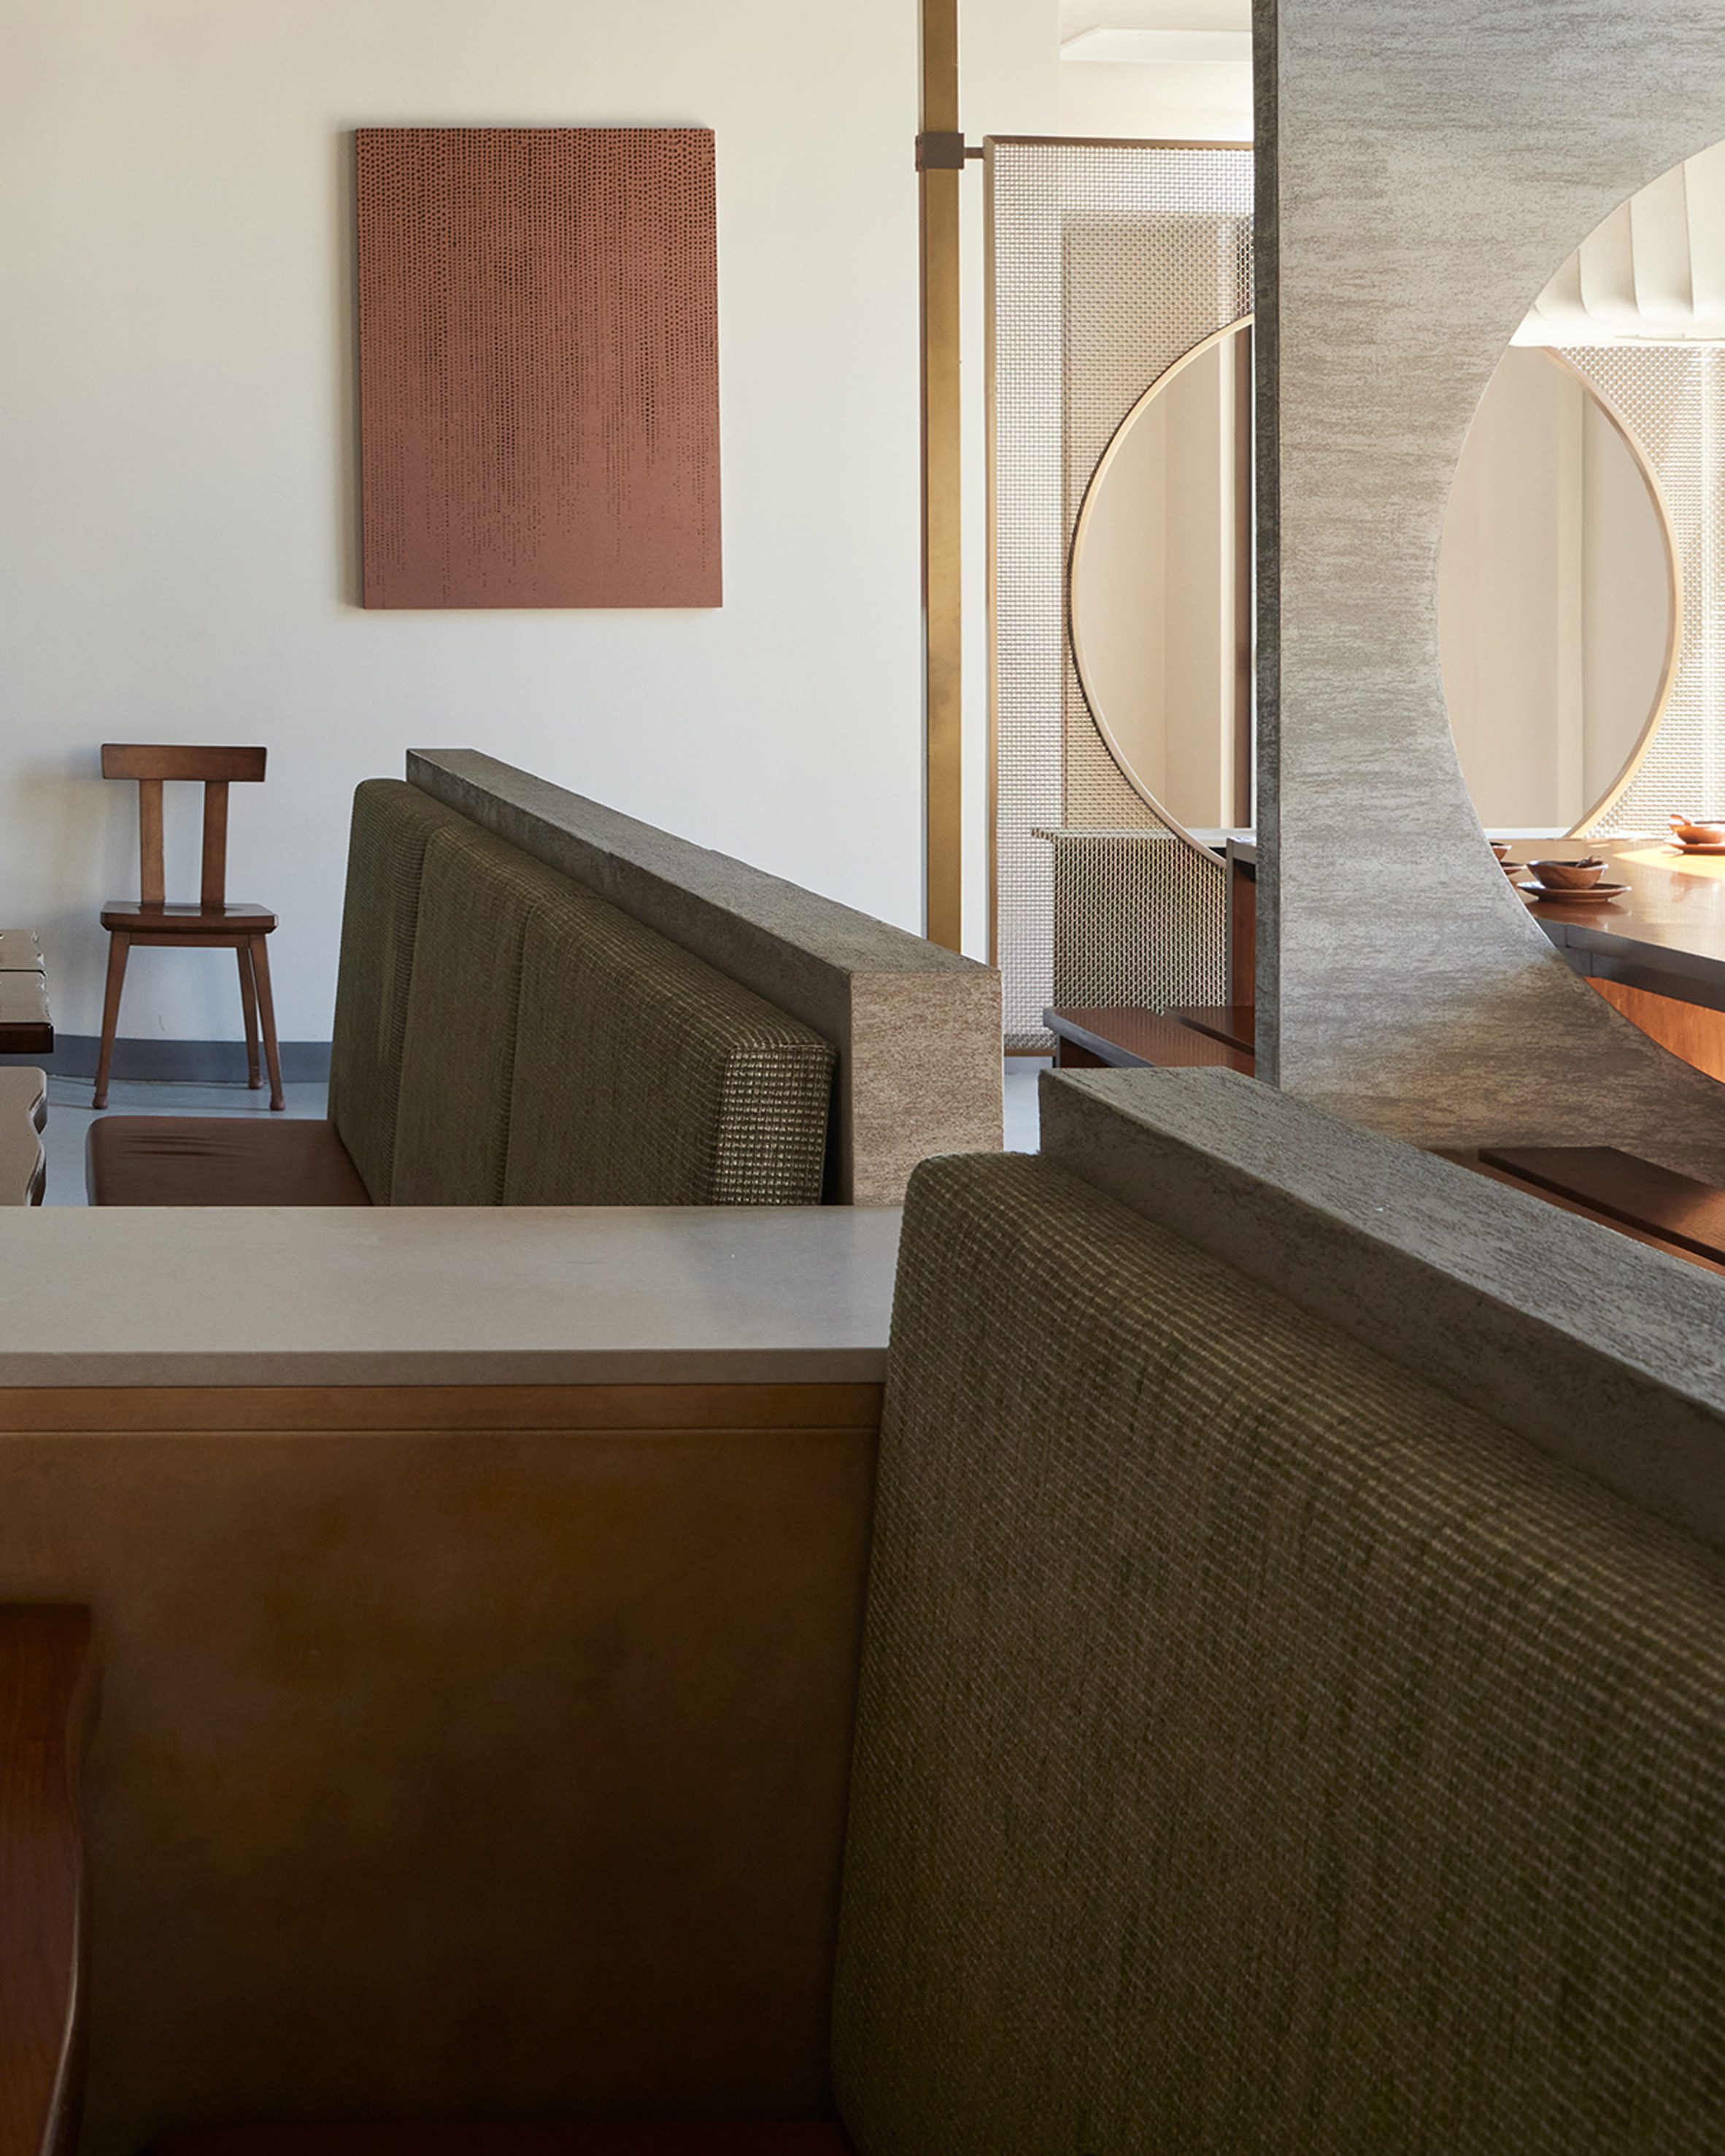 熊嘉伦在洛杉矶的四川餐厅强调“复杂和质感”|ART-Arrakis | 建筑室内设计的创新与灵感